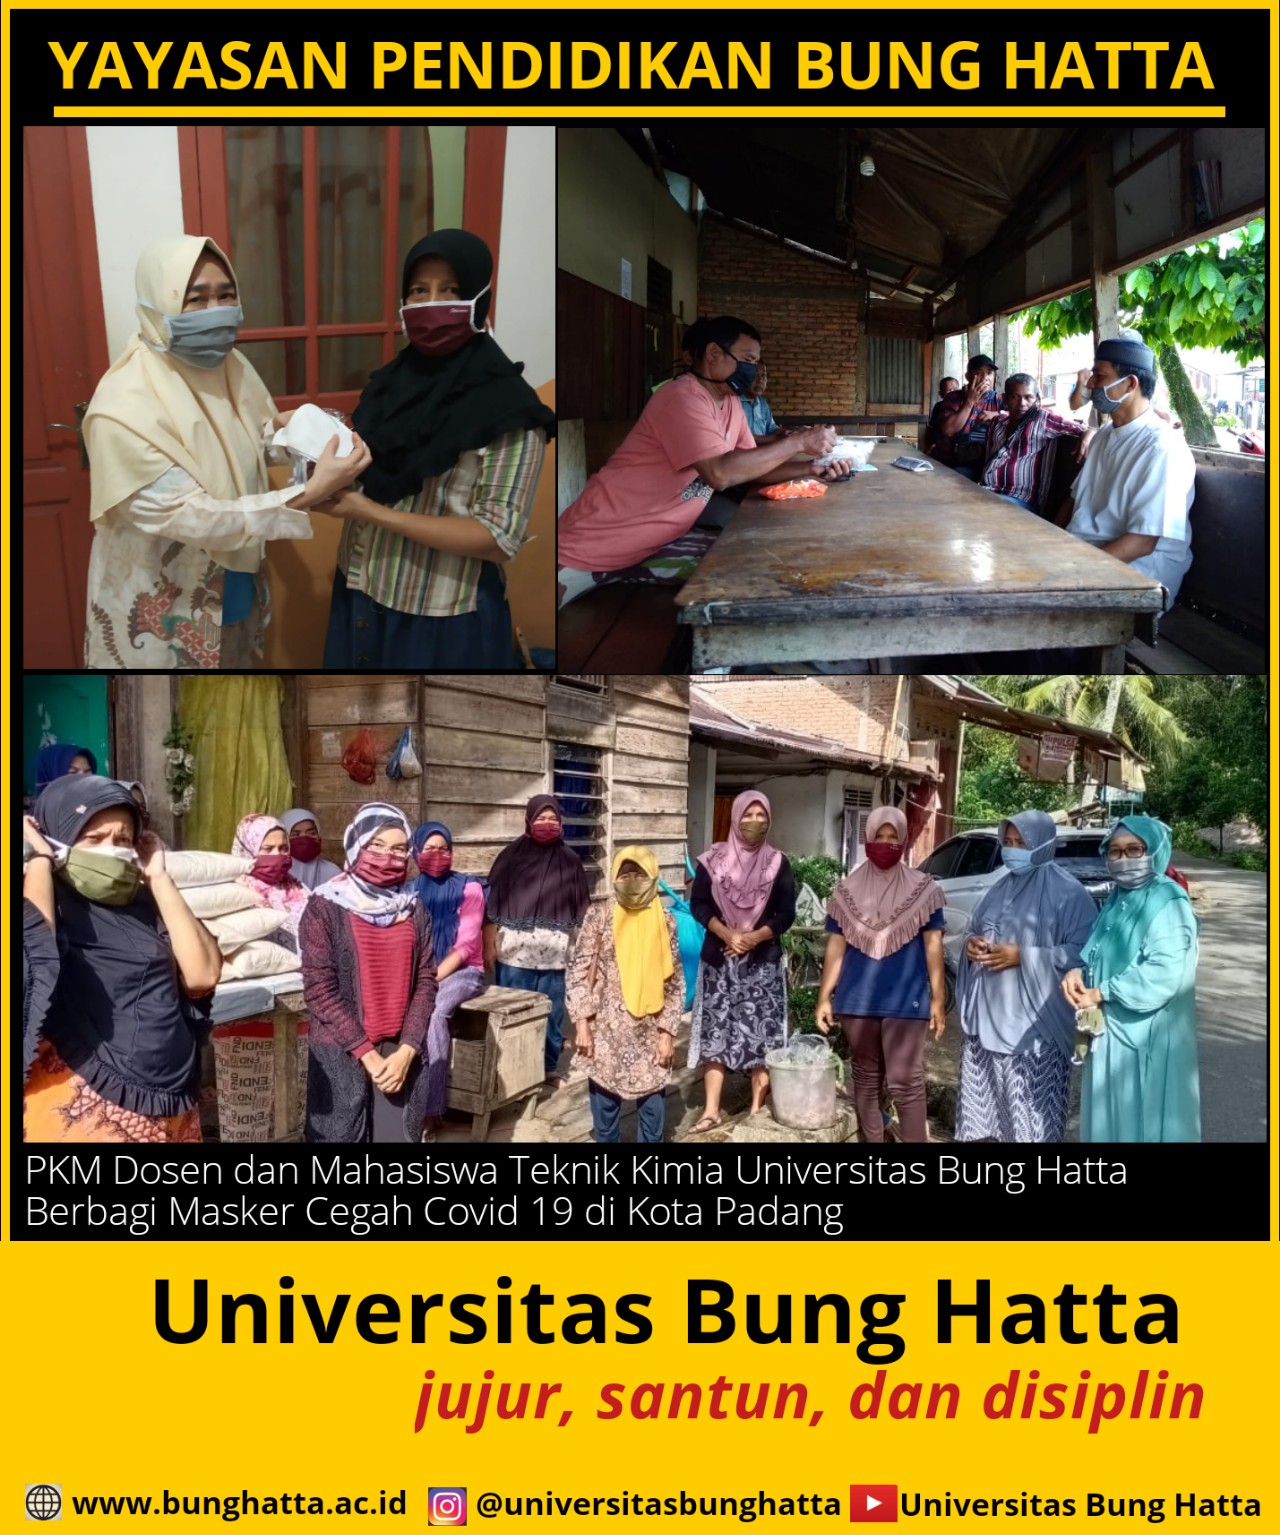 Dosen dan Mahasiswa Teknik Kimia Universitas Bung Hatta PKM Berbagi Masker Cegah Covid 19 di Kota Padang